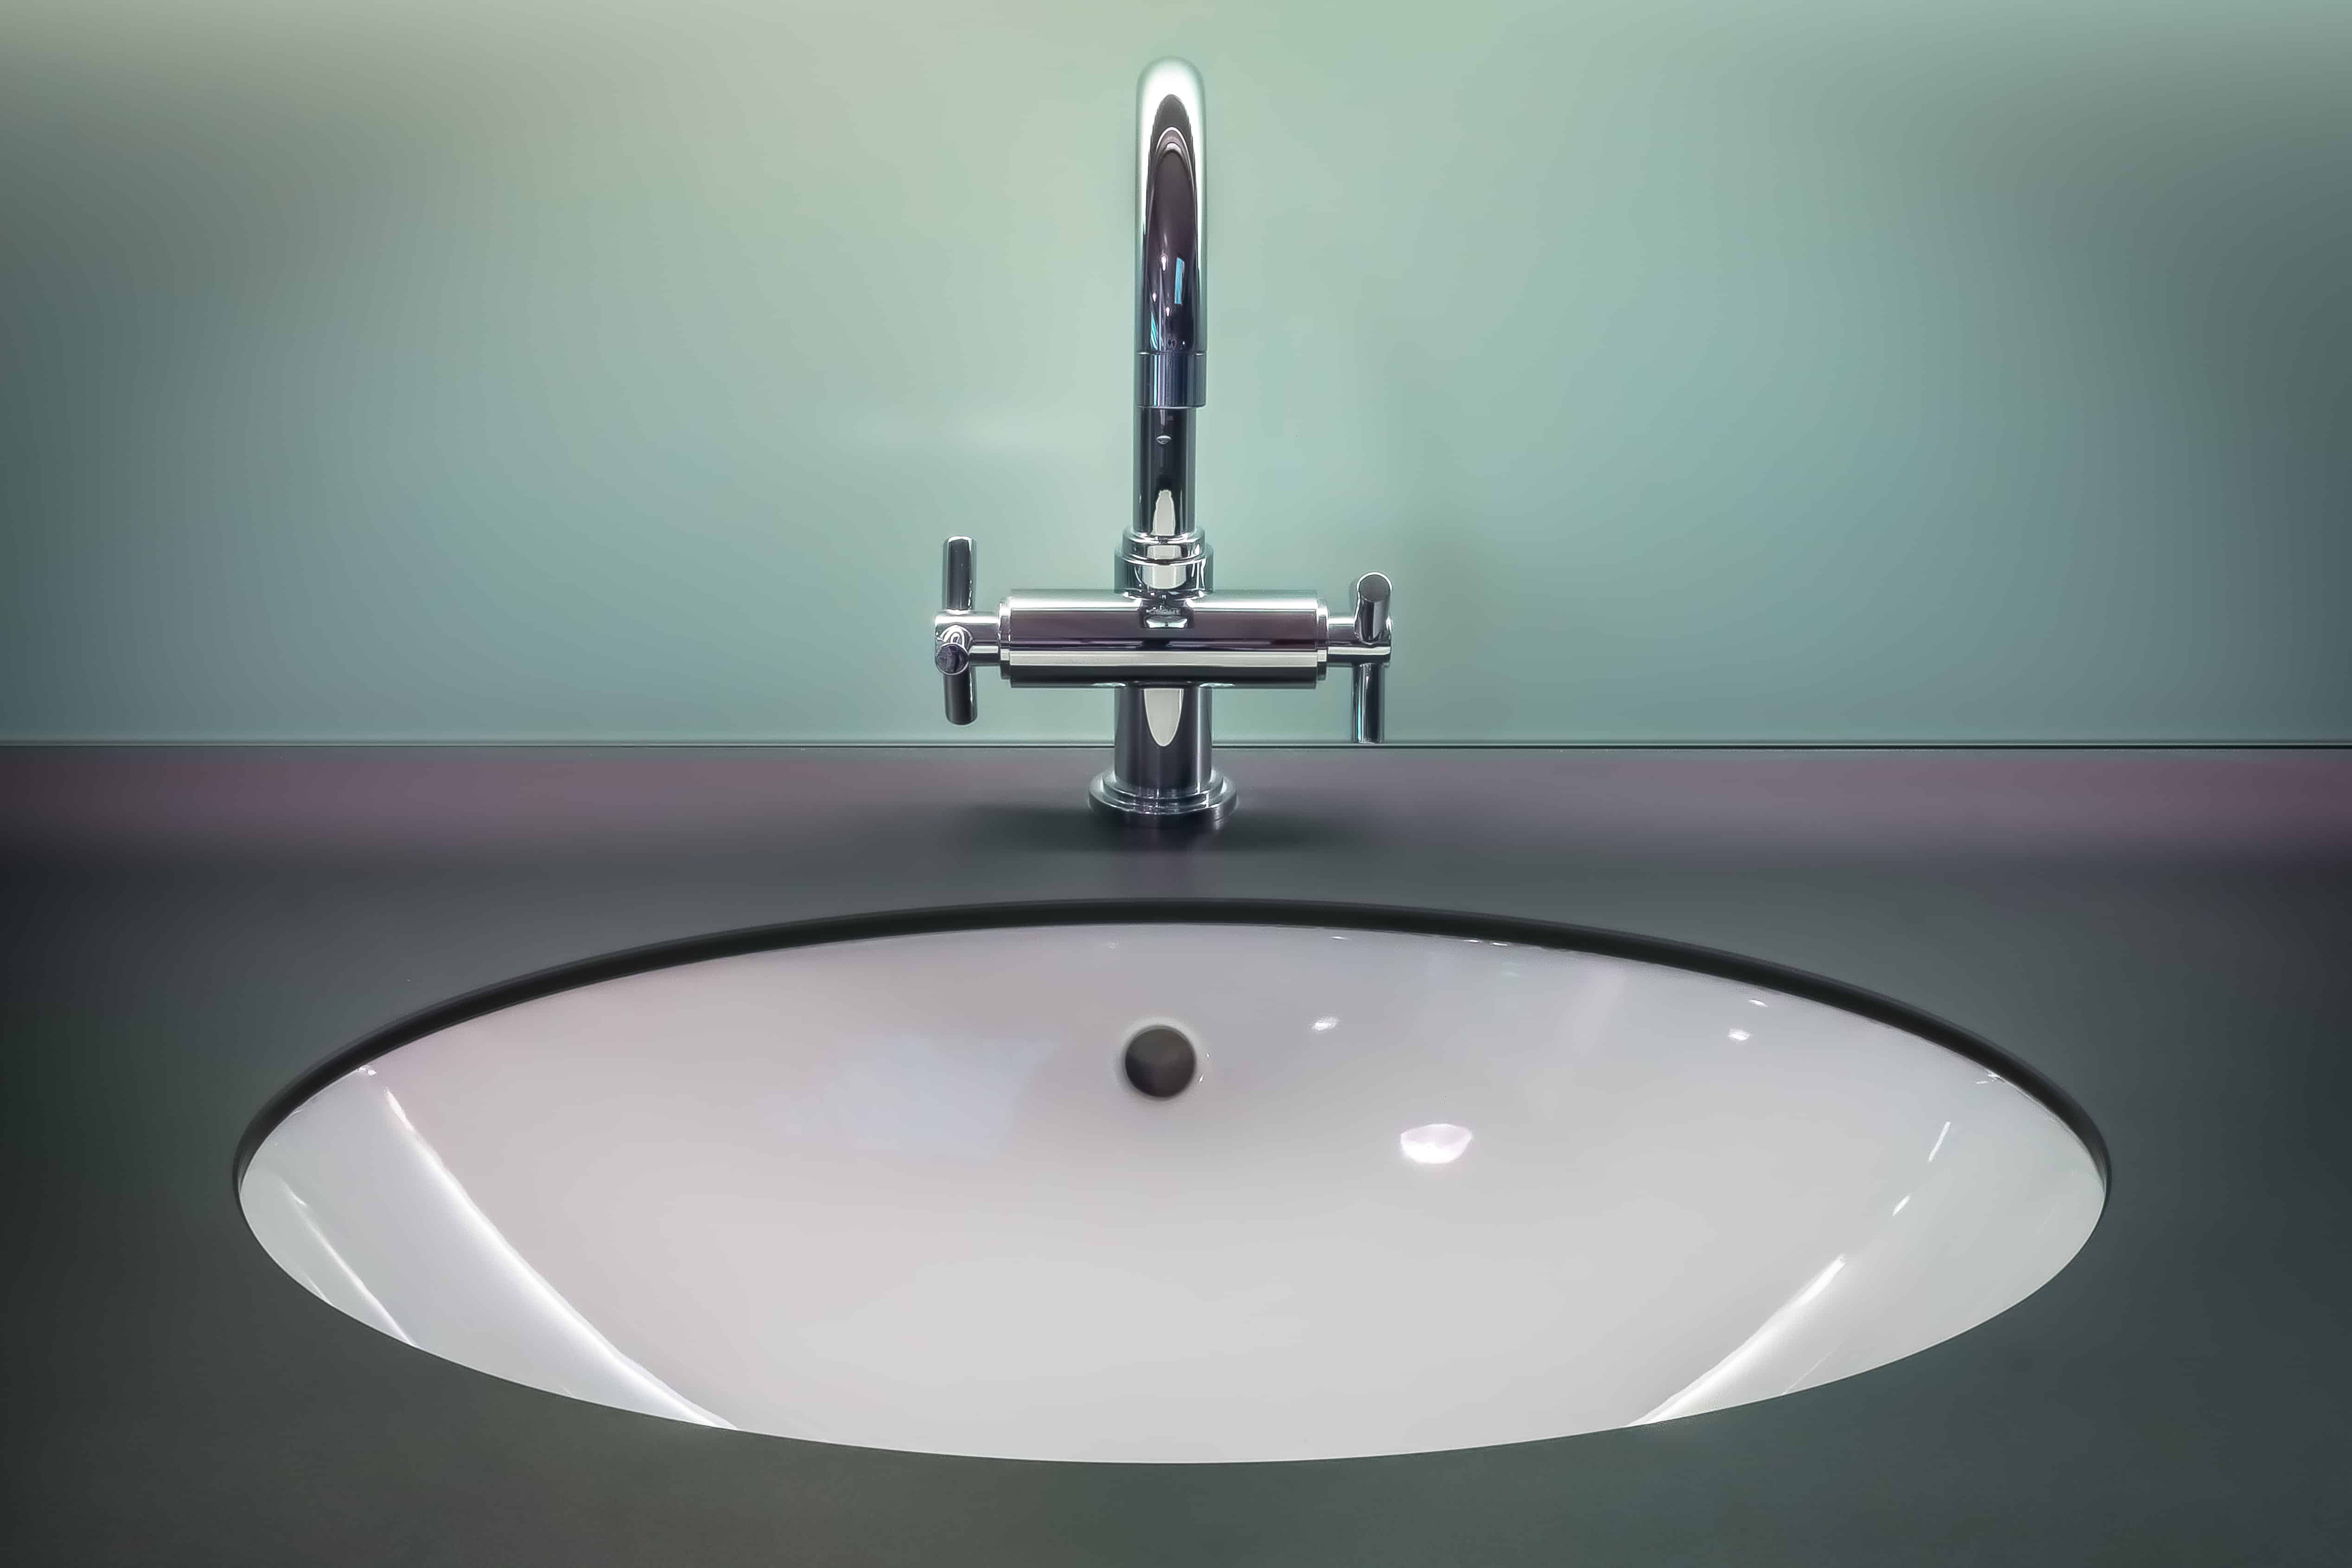 clean sink room lighting modern stainless steel bathtub bathroom indoors tap faucet bidet plumbing fixture vanity top Simphome com